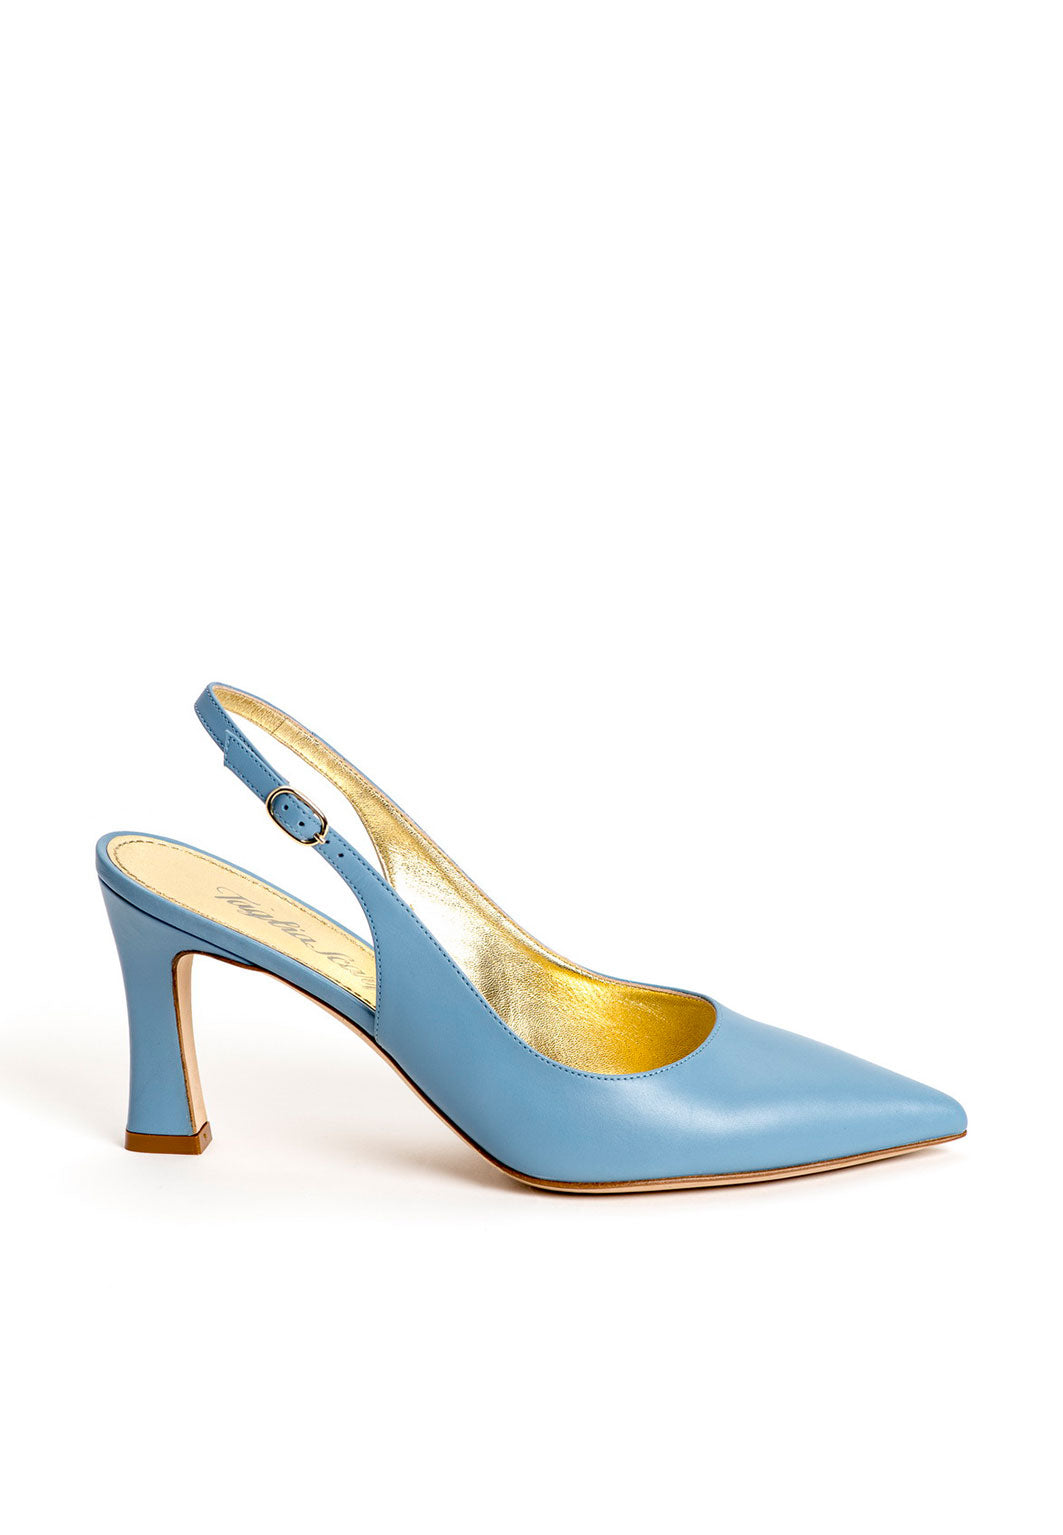 Luxus Schuhe für Damen aus blauem Kalbsleder mit verstellbarem Riemchen an der Ferse. Elegante Damenschuhe von rechts fotografiert. Offene Pumps in blau.